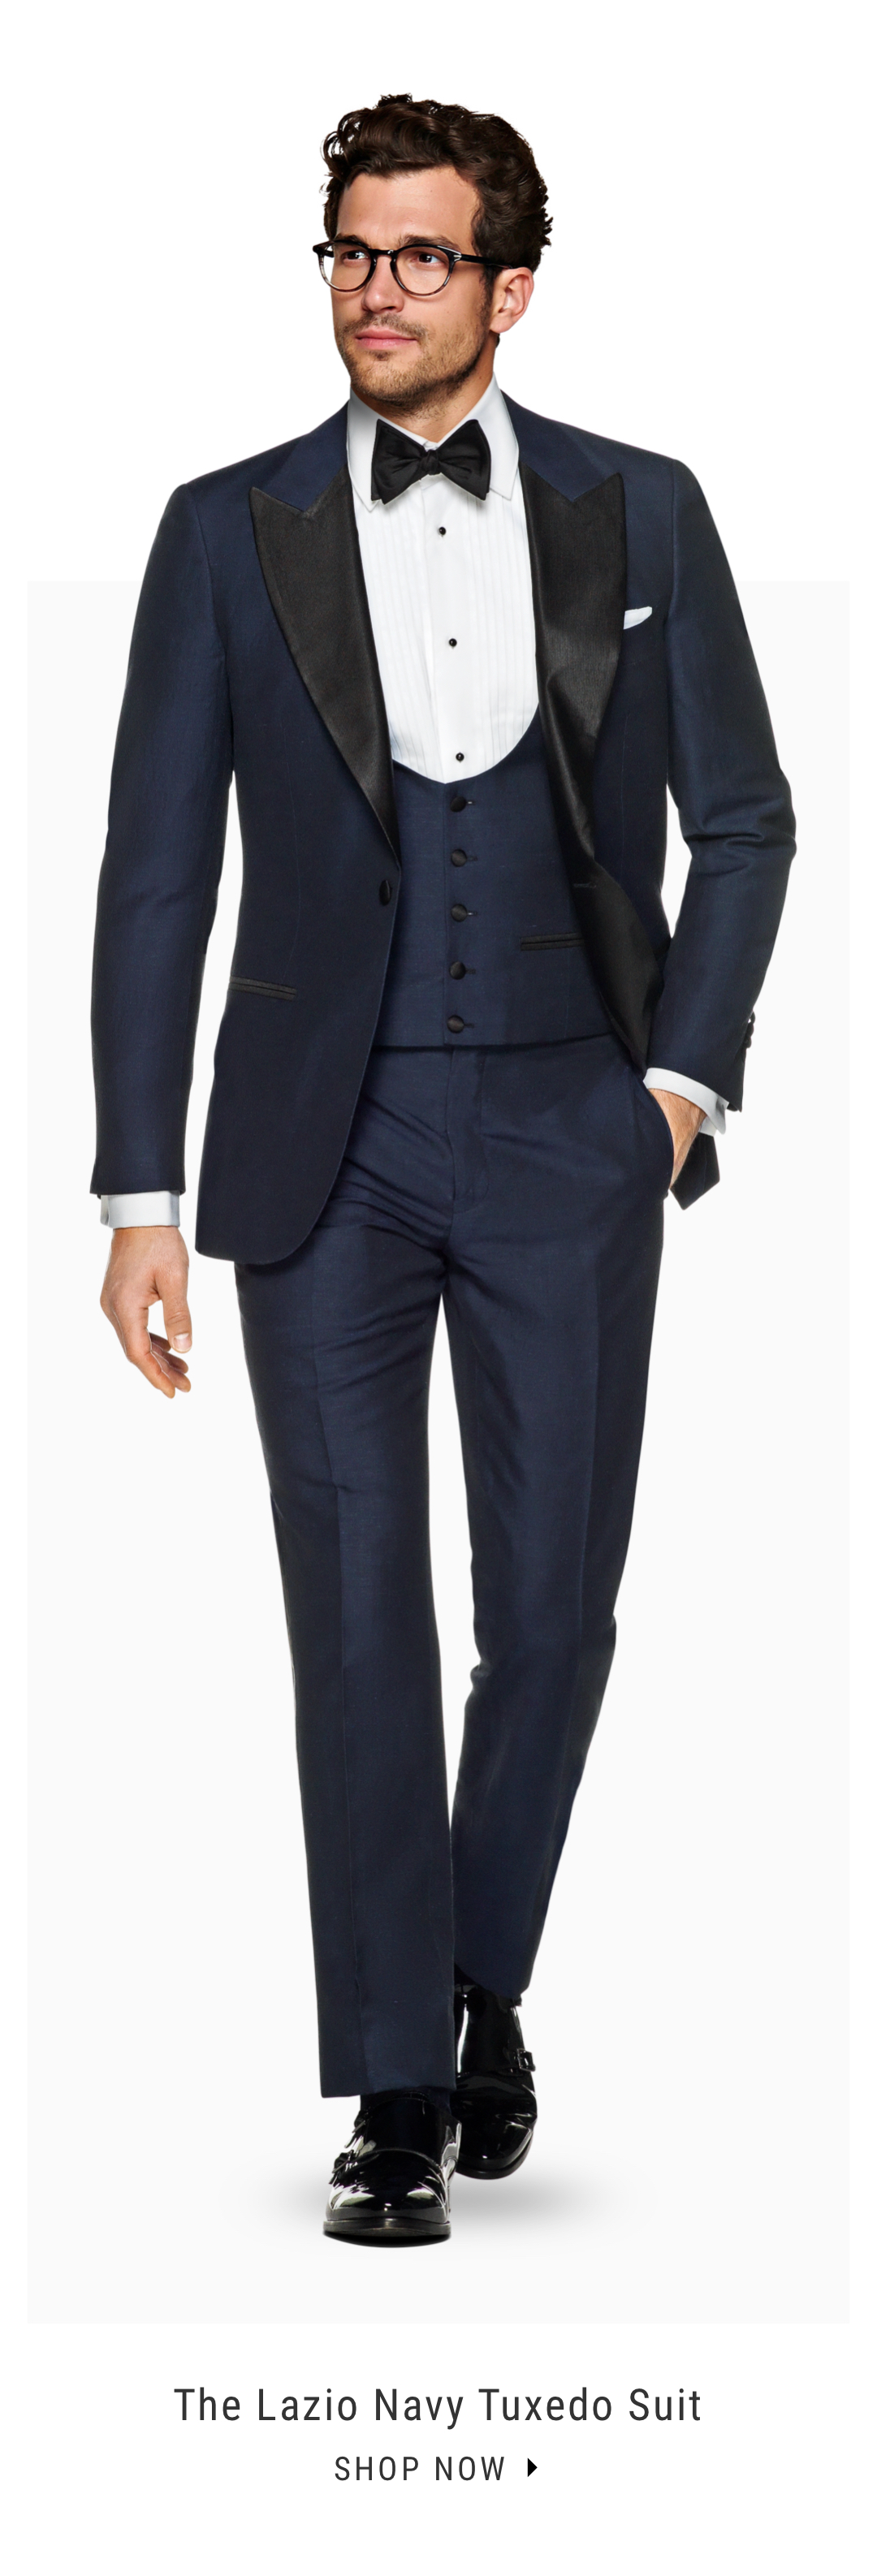 The Lazio Navy Tuxedo Suit